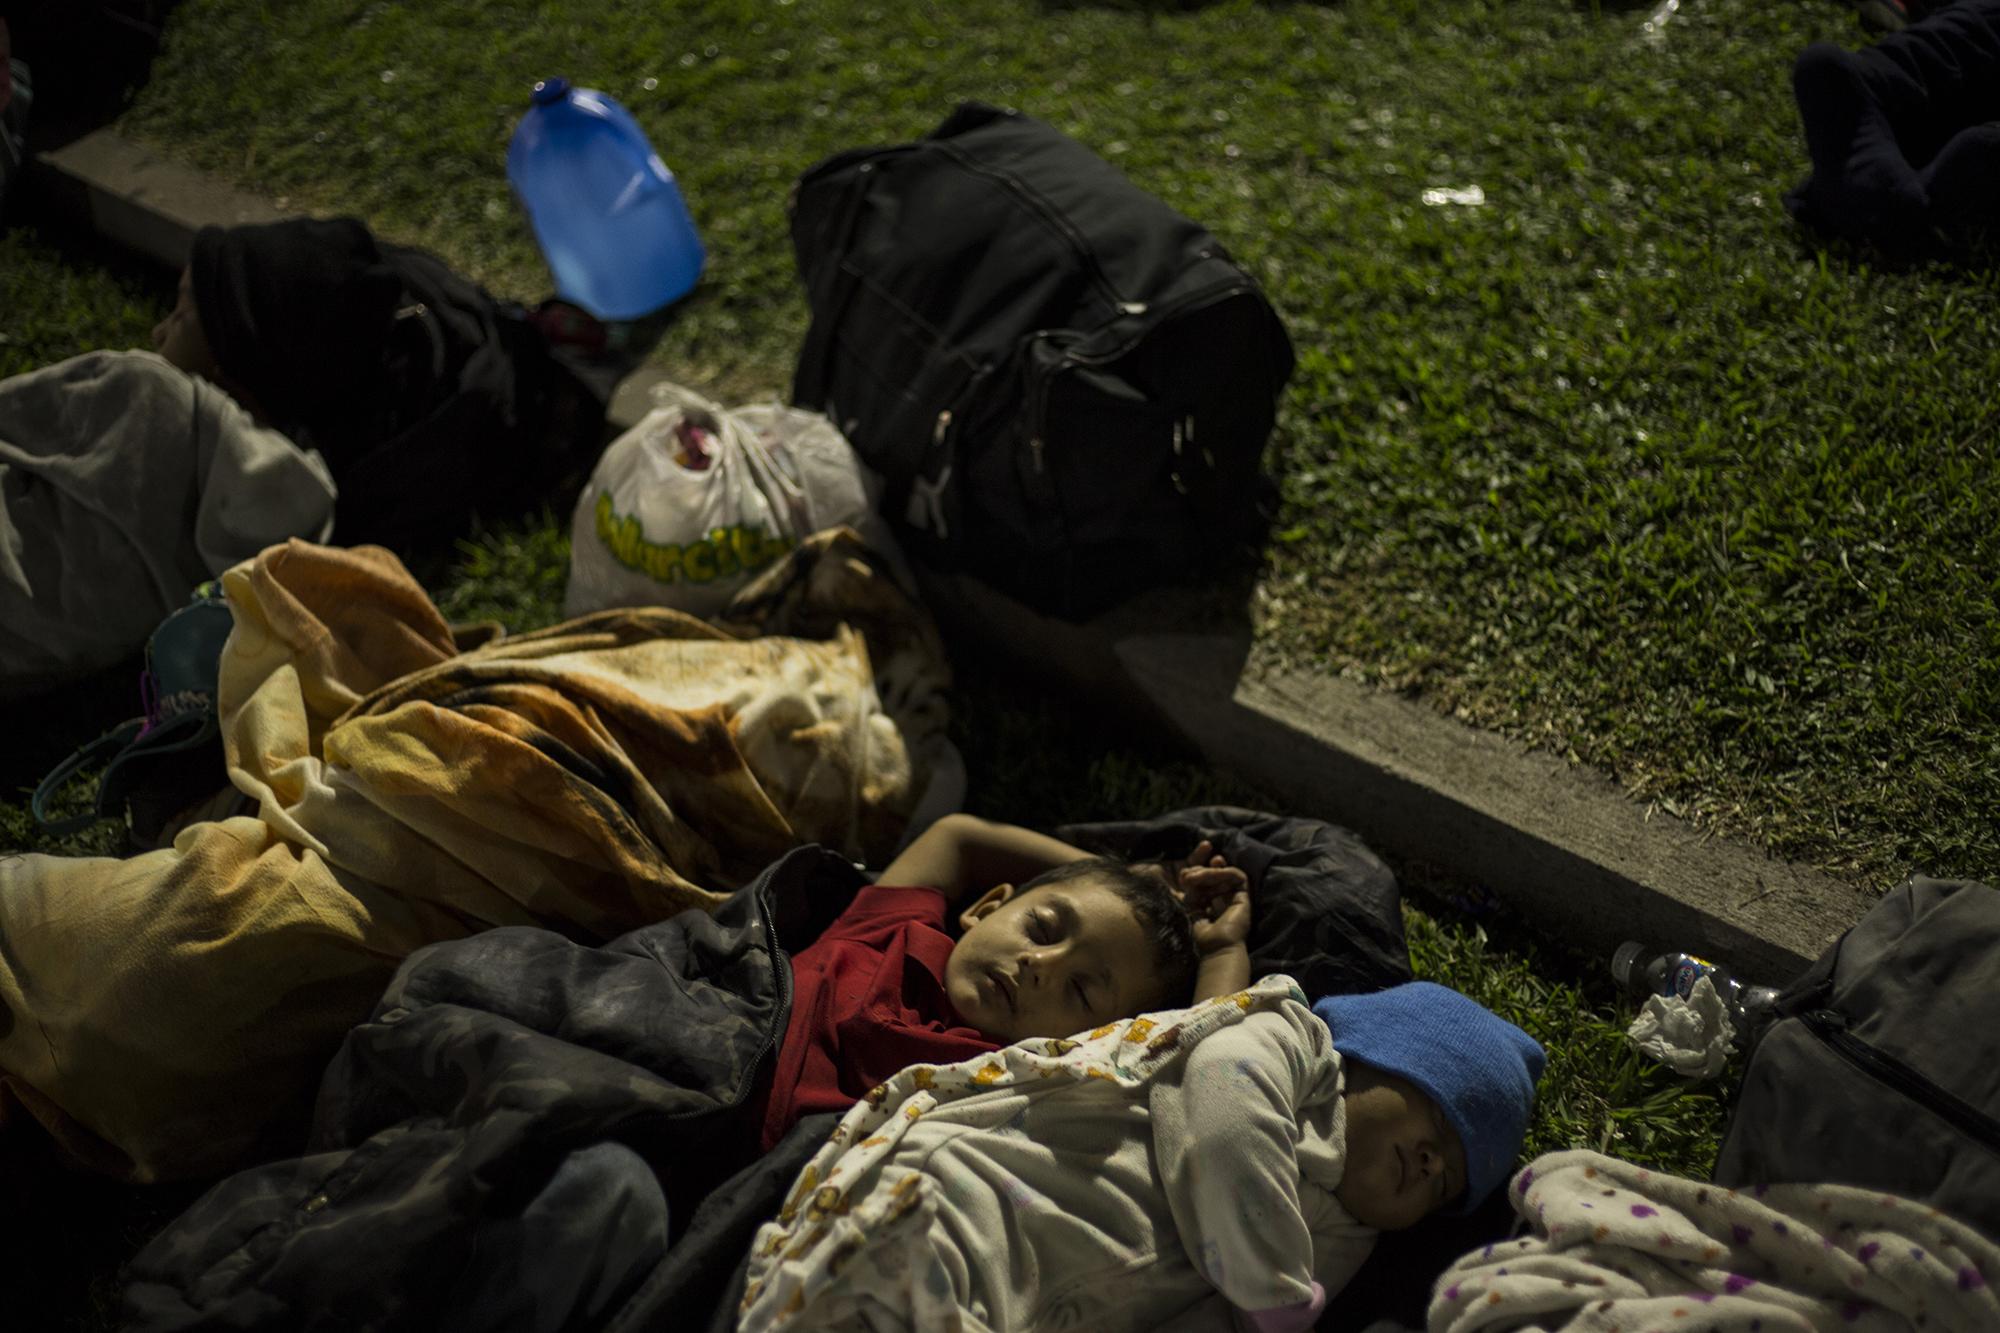 Menores dormían solos, en medio de muchos que llegaron a la plaza para unirse a la caravana que partió el miércoles 31 de Octubre. Foto: Víctor Peña.